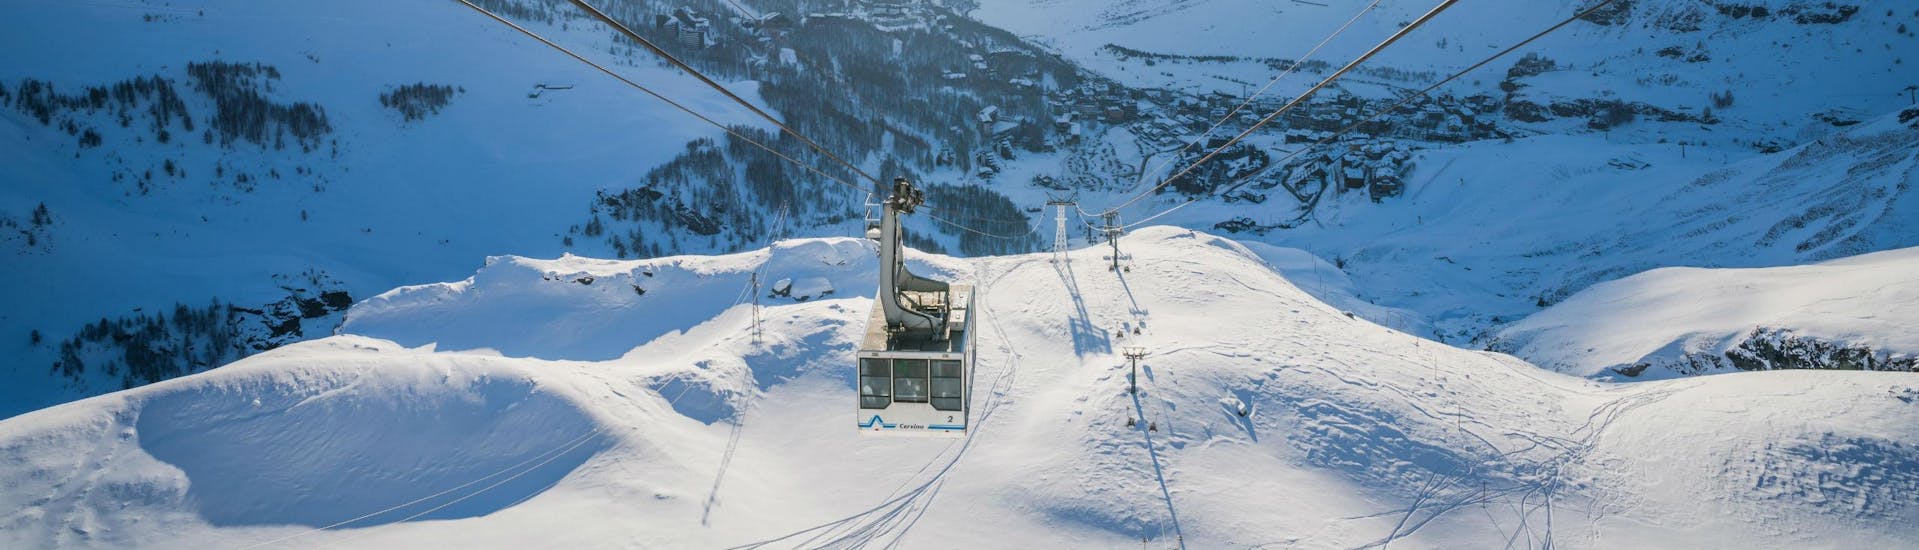 Una funivia sta risalendo i pendii del comprensorio sciistico di Cervinia, dove i turisti possono imparare a sciare grazie alle lezioni di sci impartite dalle scuole di sci locai.